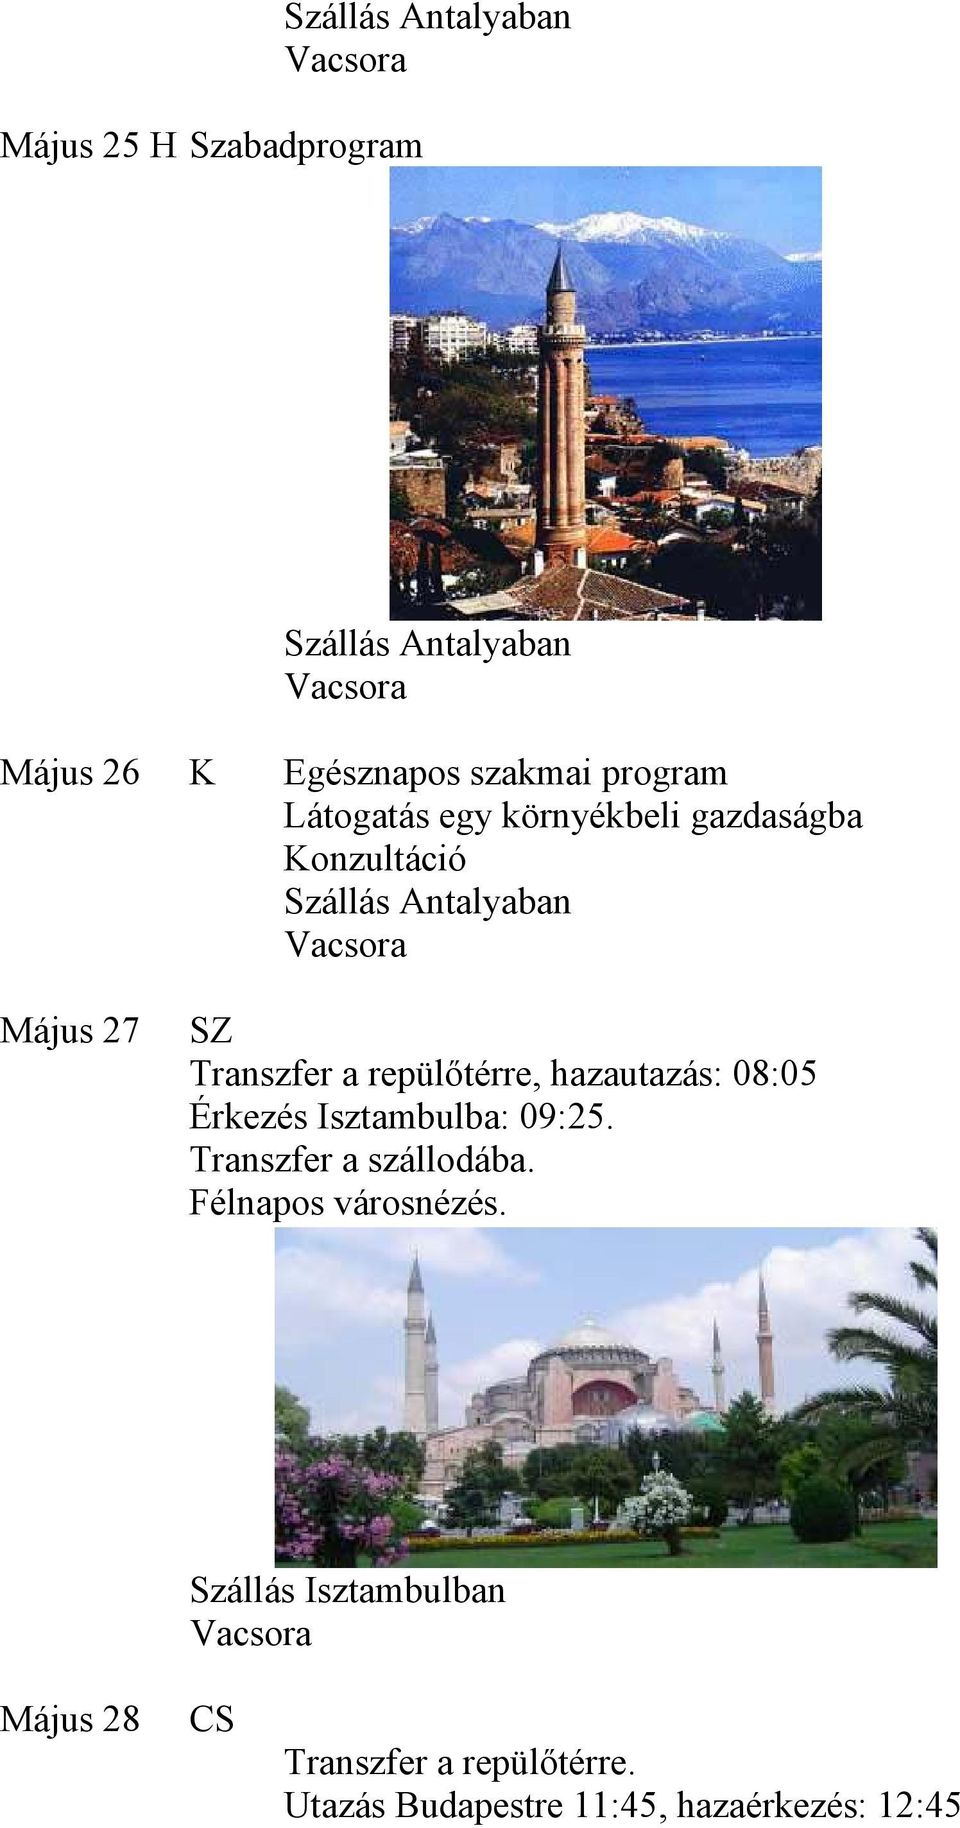 08:05 Érkezés Isztambulba: 09:25. Transzfer a szállodába. Félnapos városnézés.